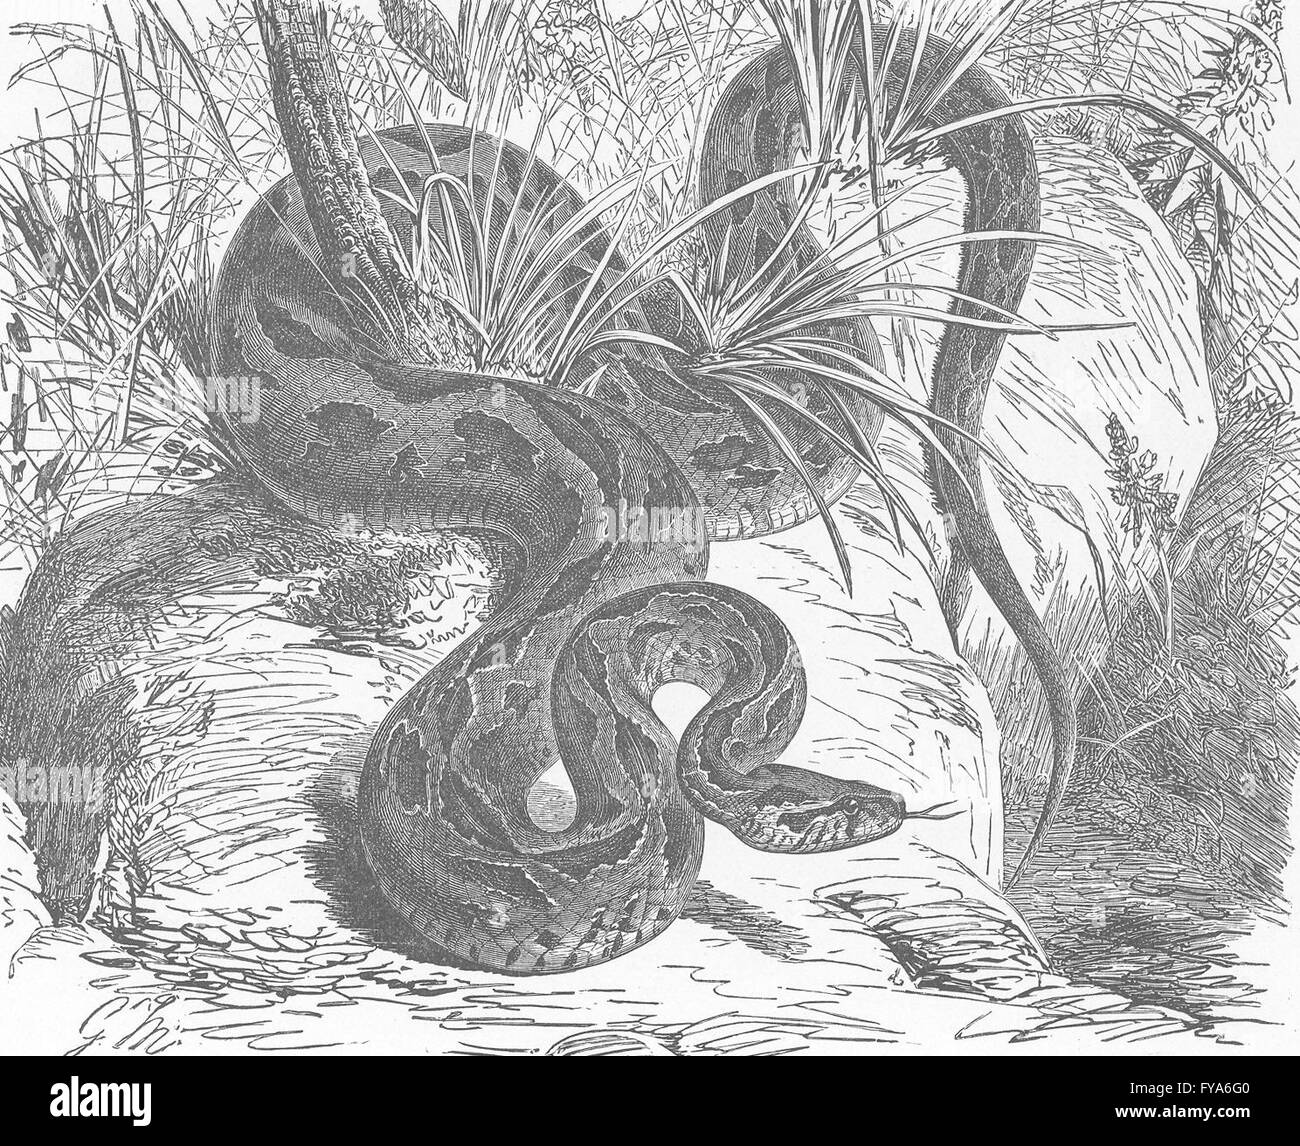 Las serpientes: Russell's Viper, grabado antiguo 1896 Foto de stock